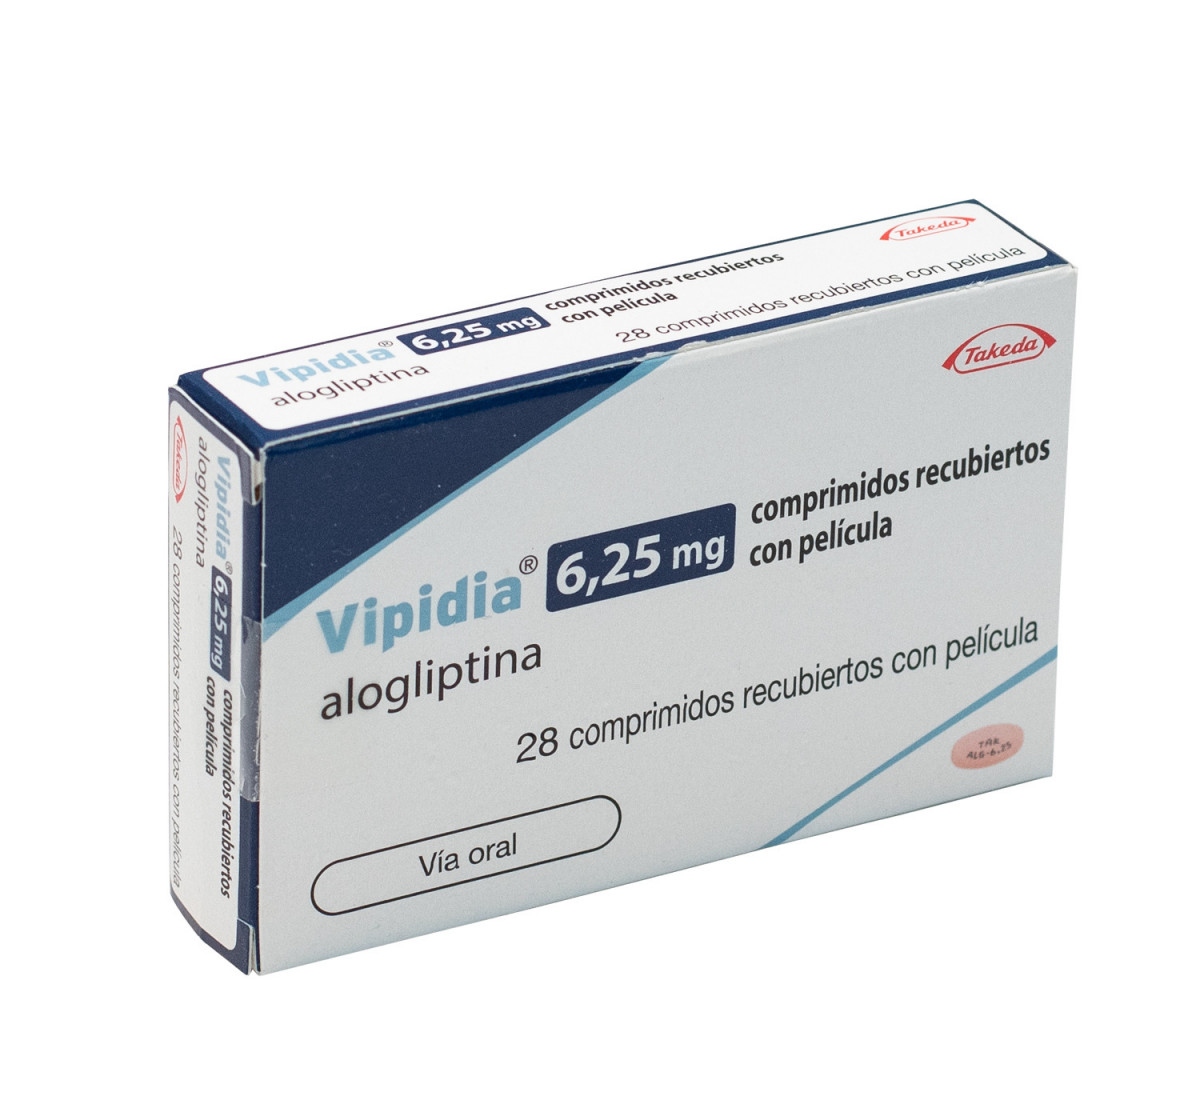 VIPIDIA 6,25 MG COMPRIMIDOS RECUBIERTOS CON PELICULA , 28 comprimidos fotografía del envase.